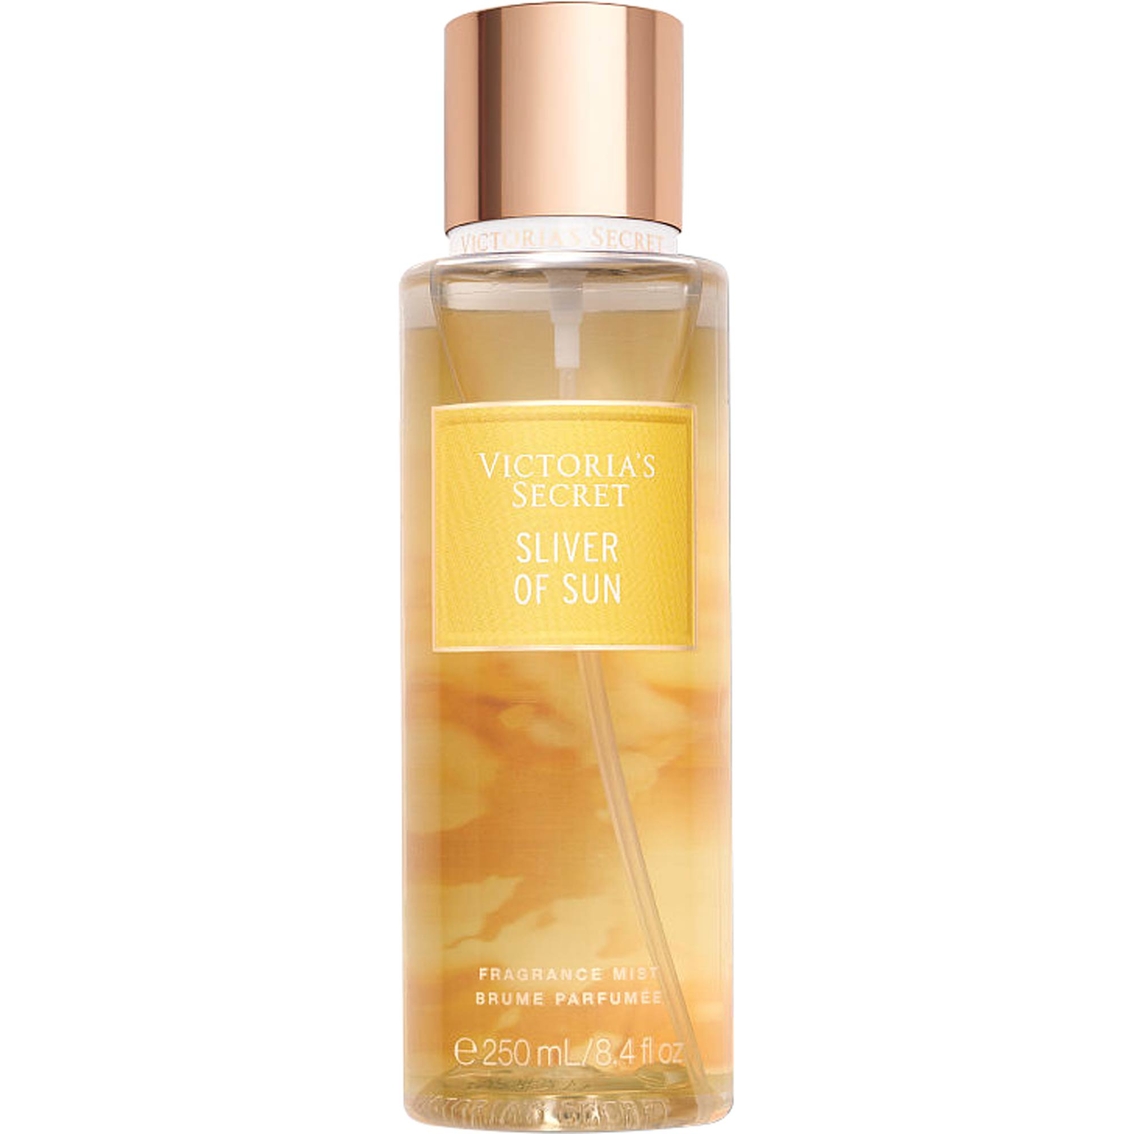 Victoria's Secret Sliver Of Sun Fragrance Mist 8.4 oz.